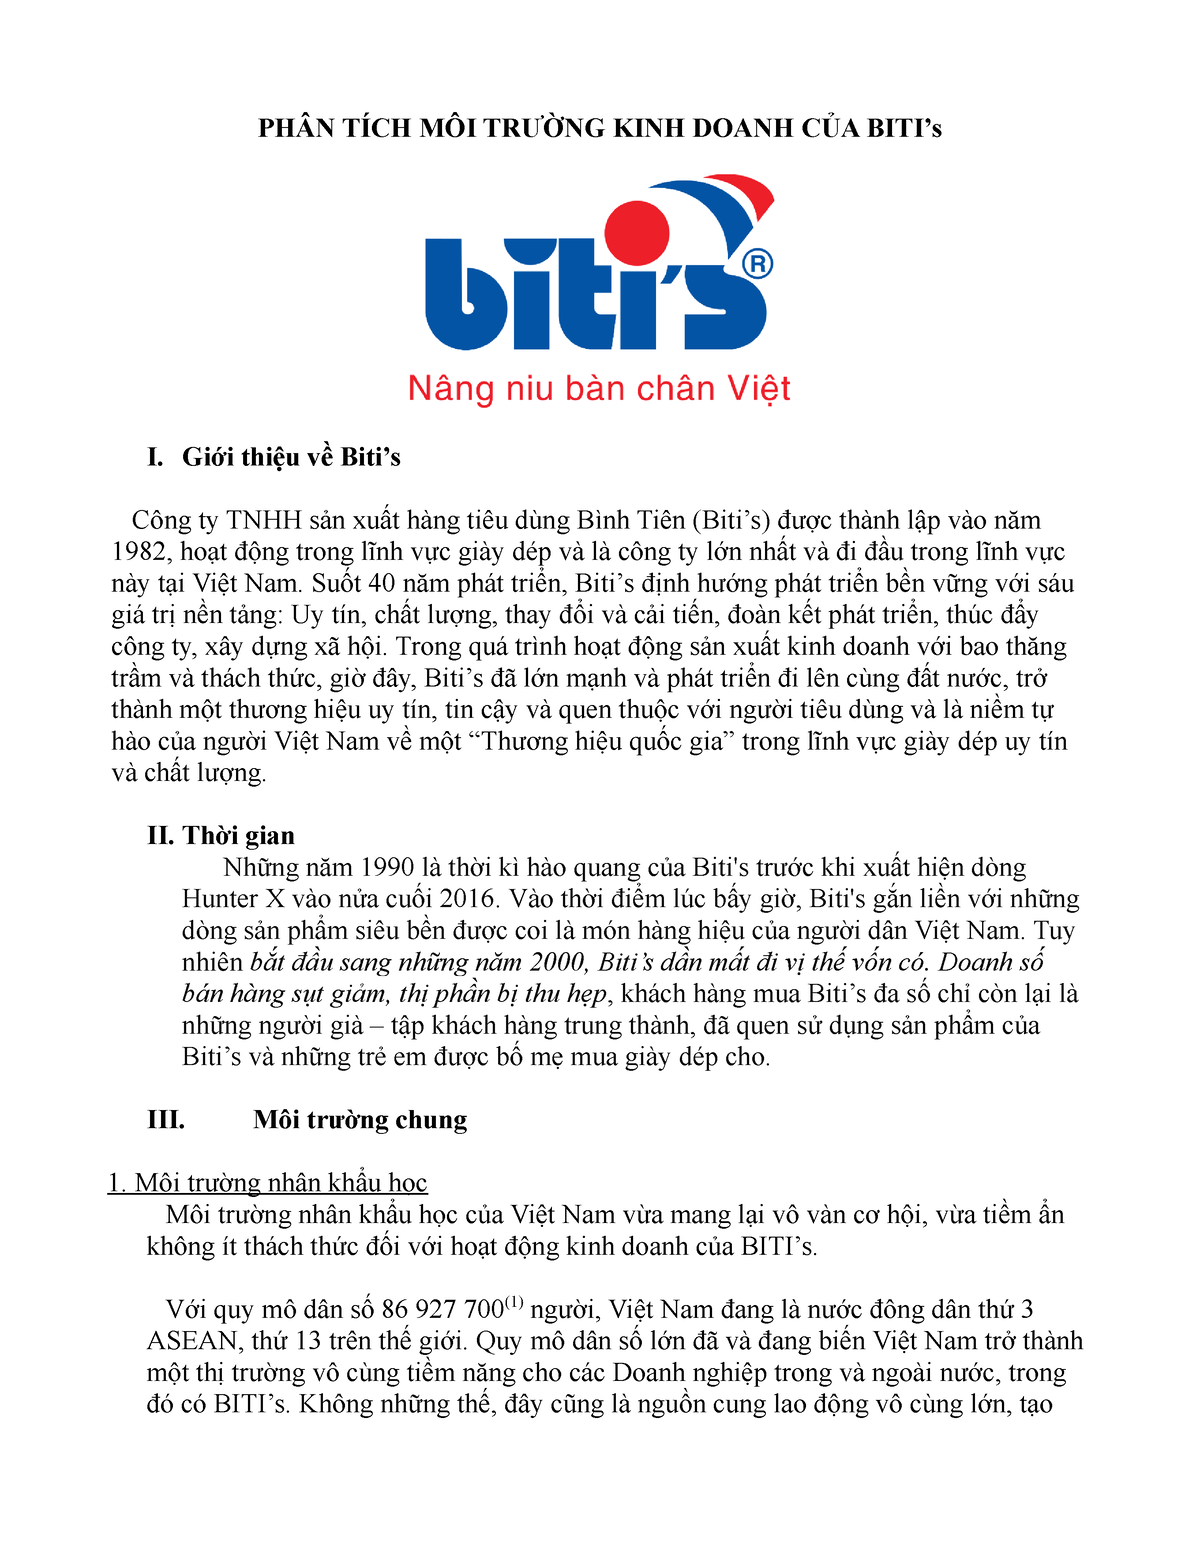 Chiến lược marketing của Bitis Nâng niu bàn chân Việt